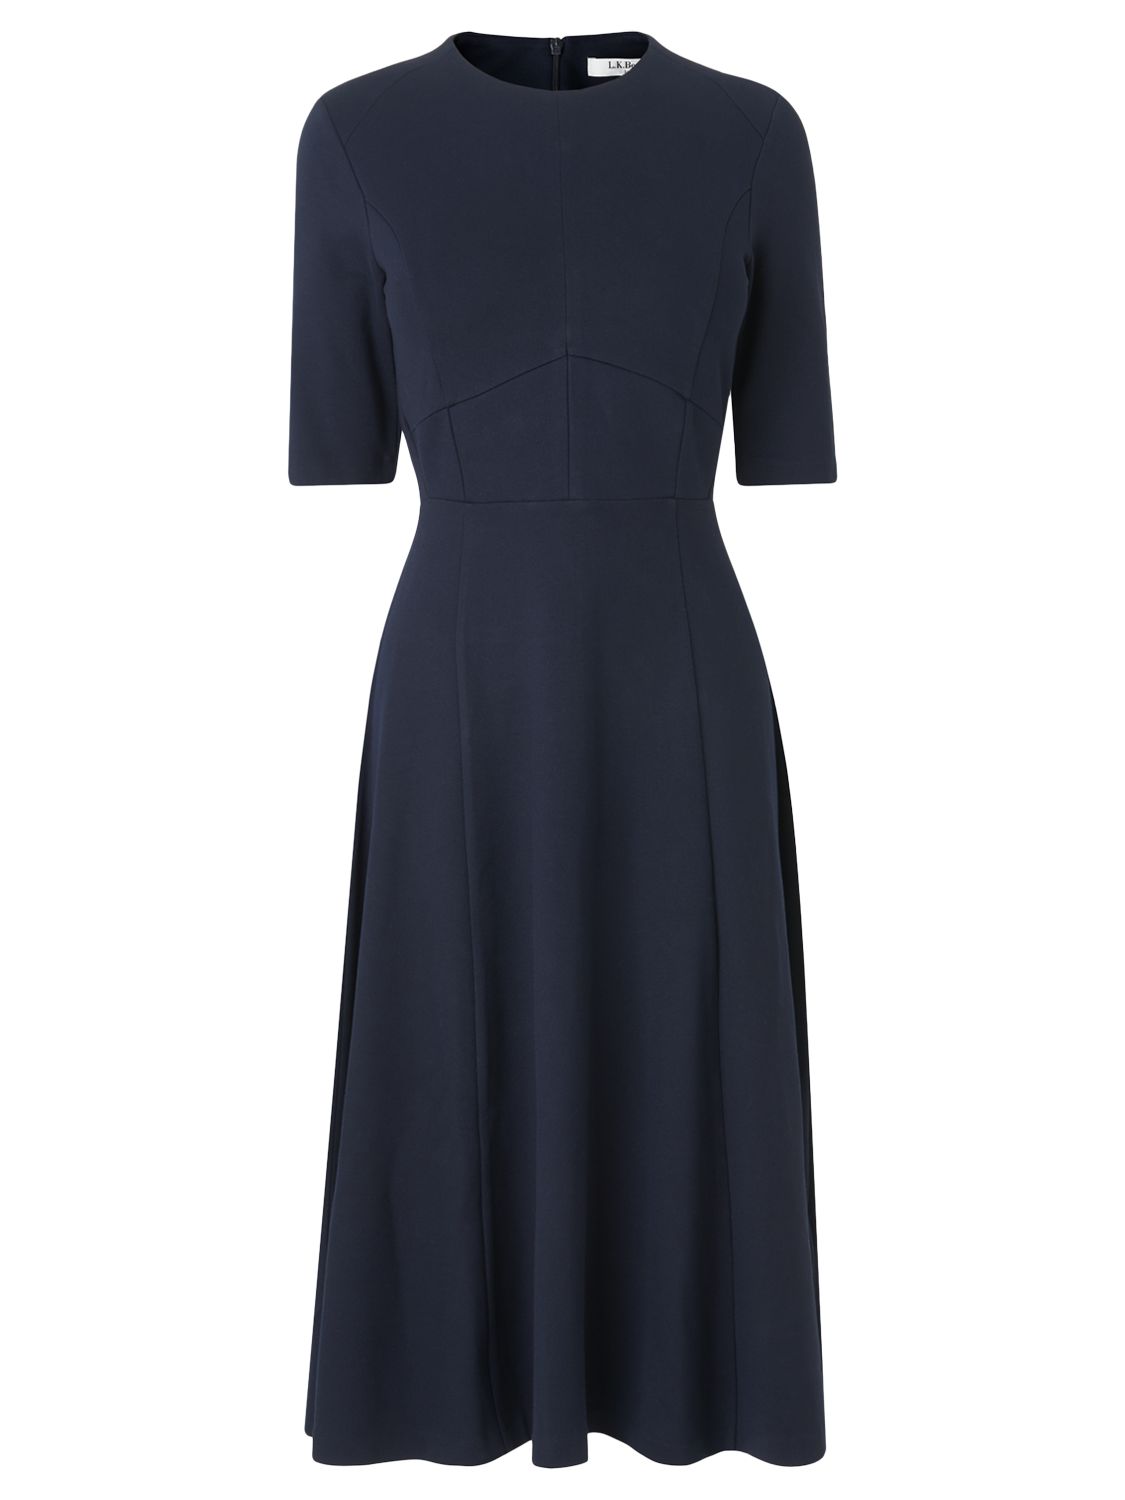 L.K.Bennett Beth Seam Detail Dress, Sloane Blue